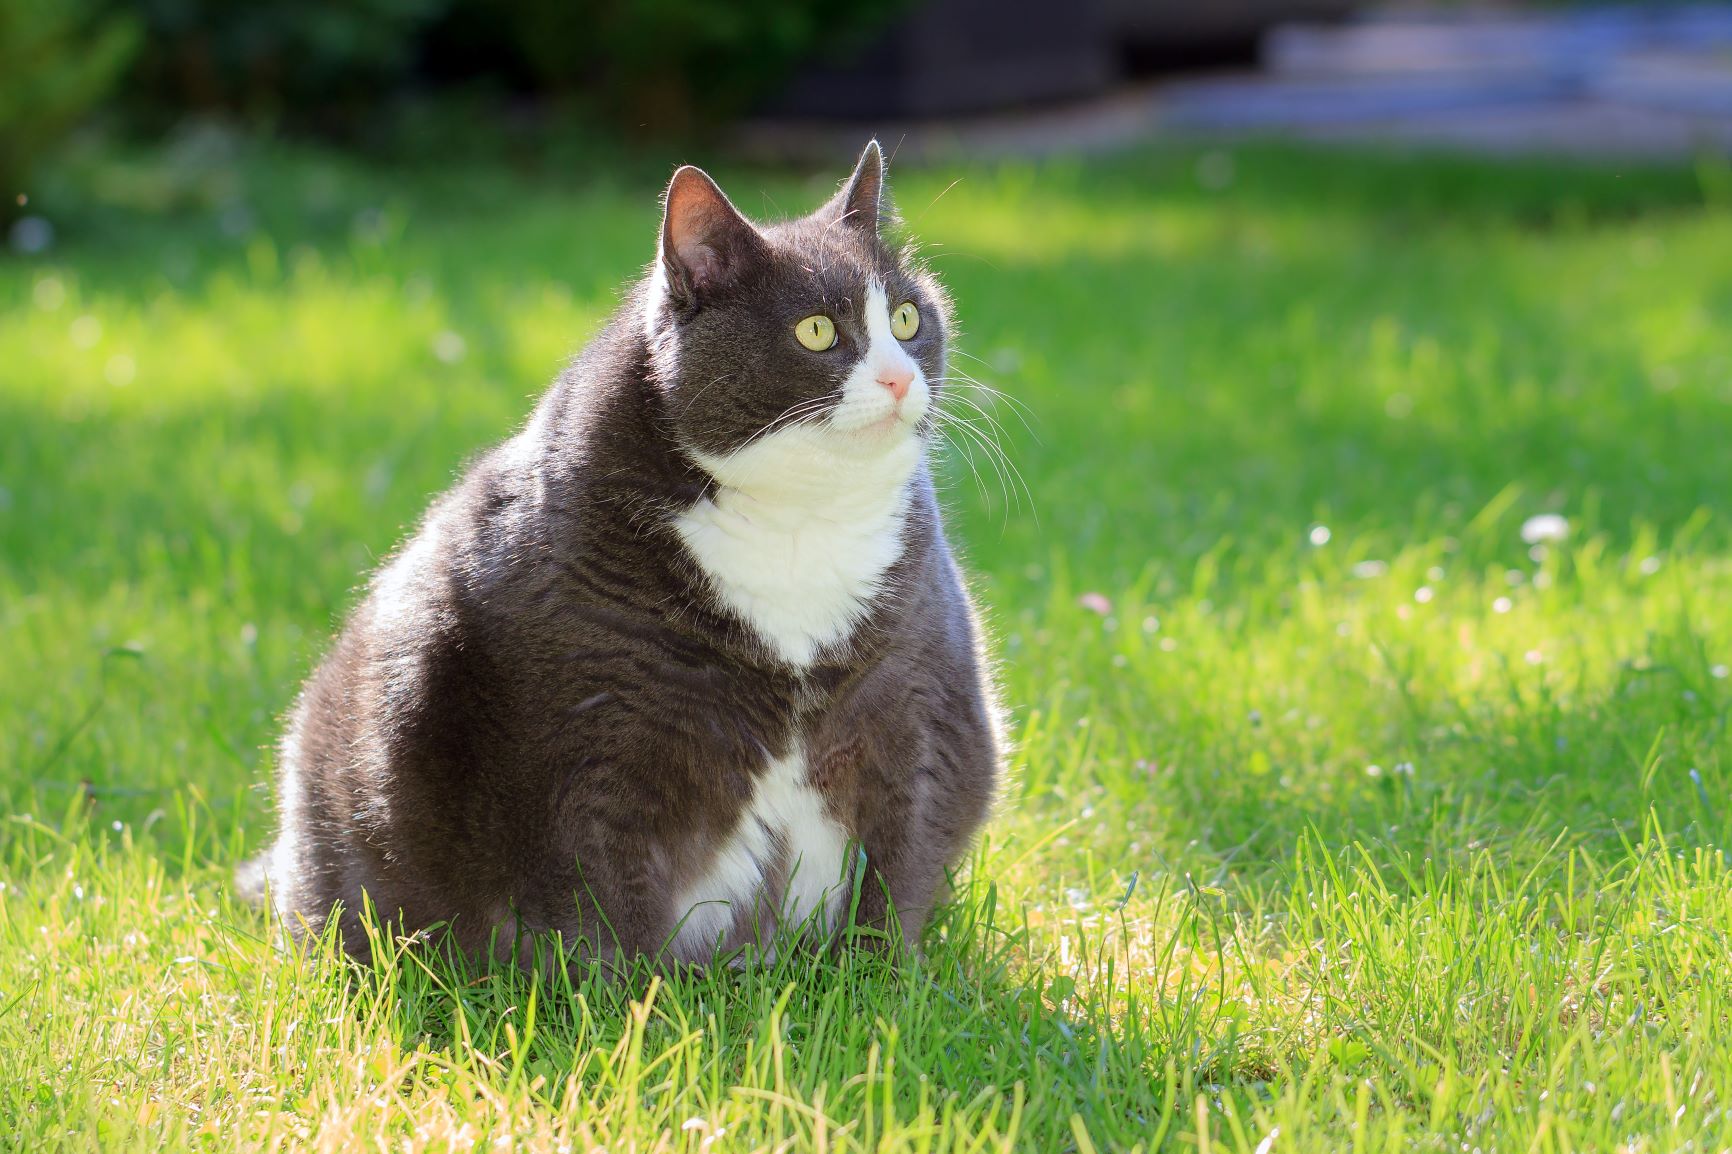 kuinka paljon kissan laihtuminen 2 kiloa on ihmisen painoa kohden?